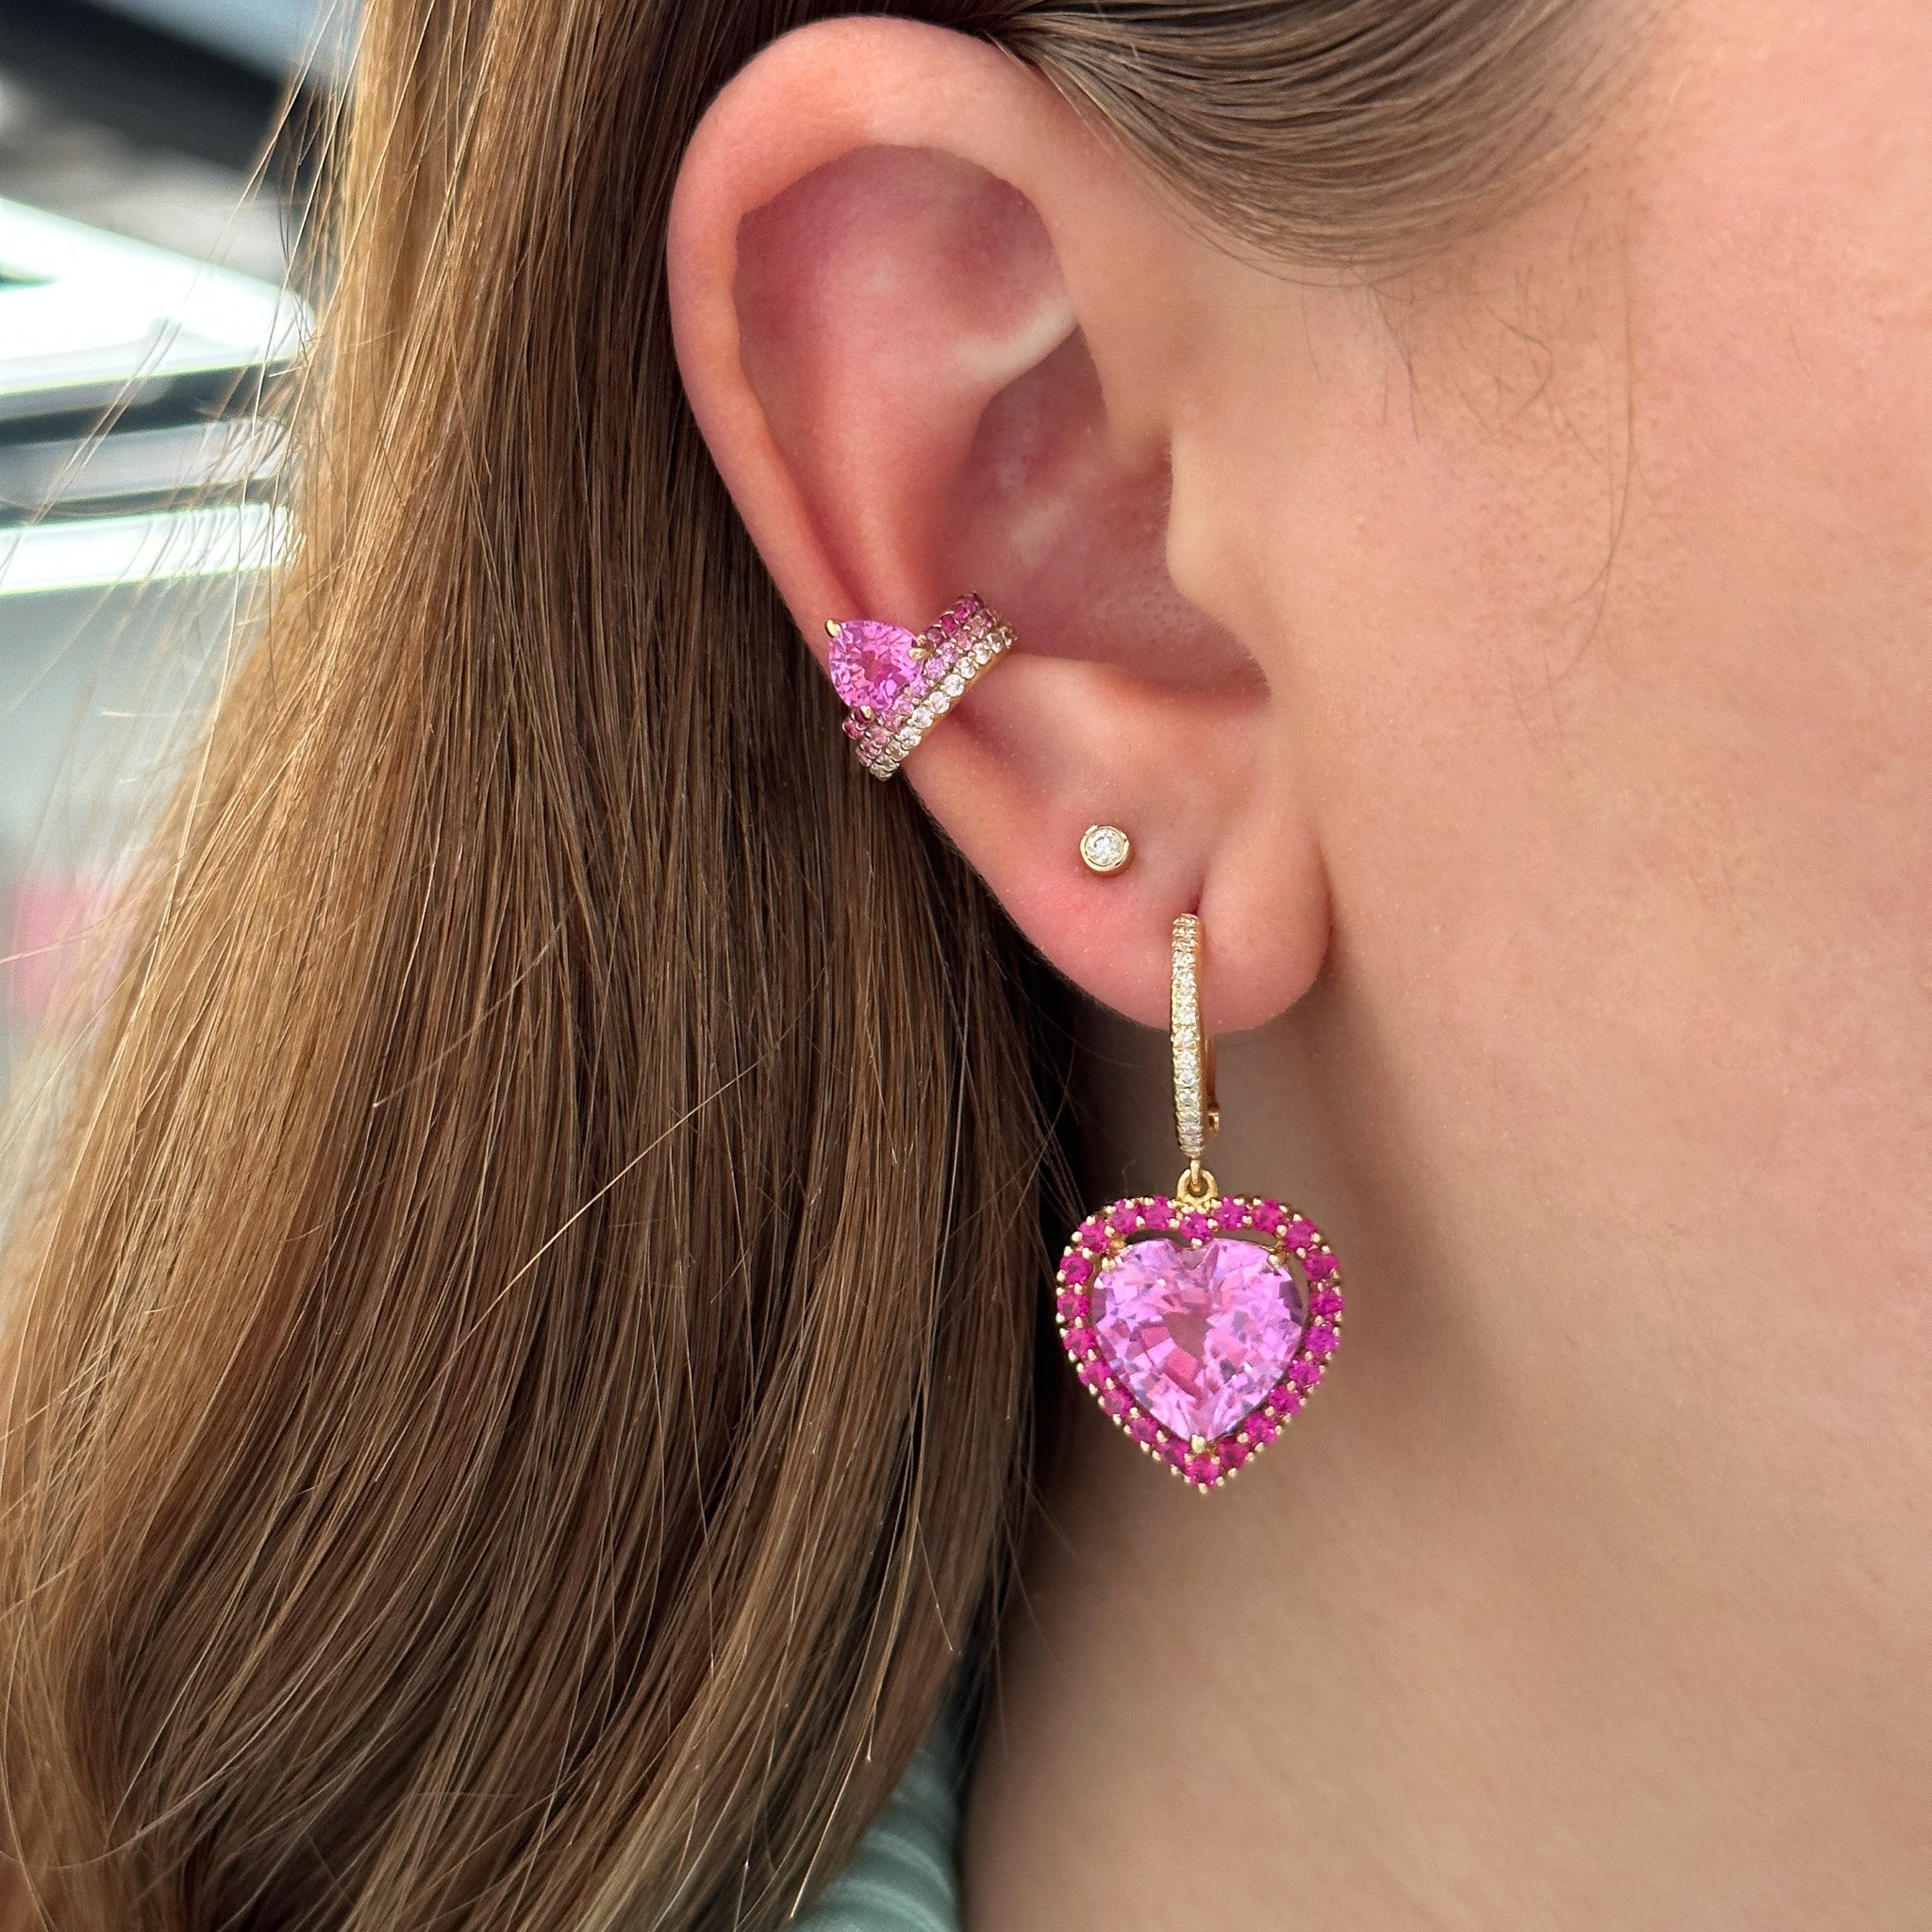 Heart Shaped Pink Sapphire Earrings